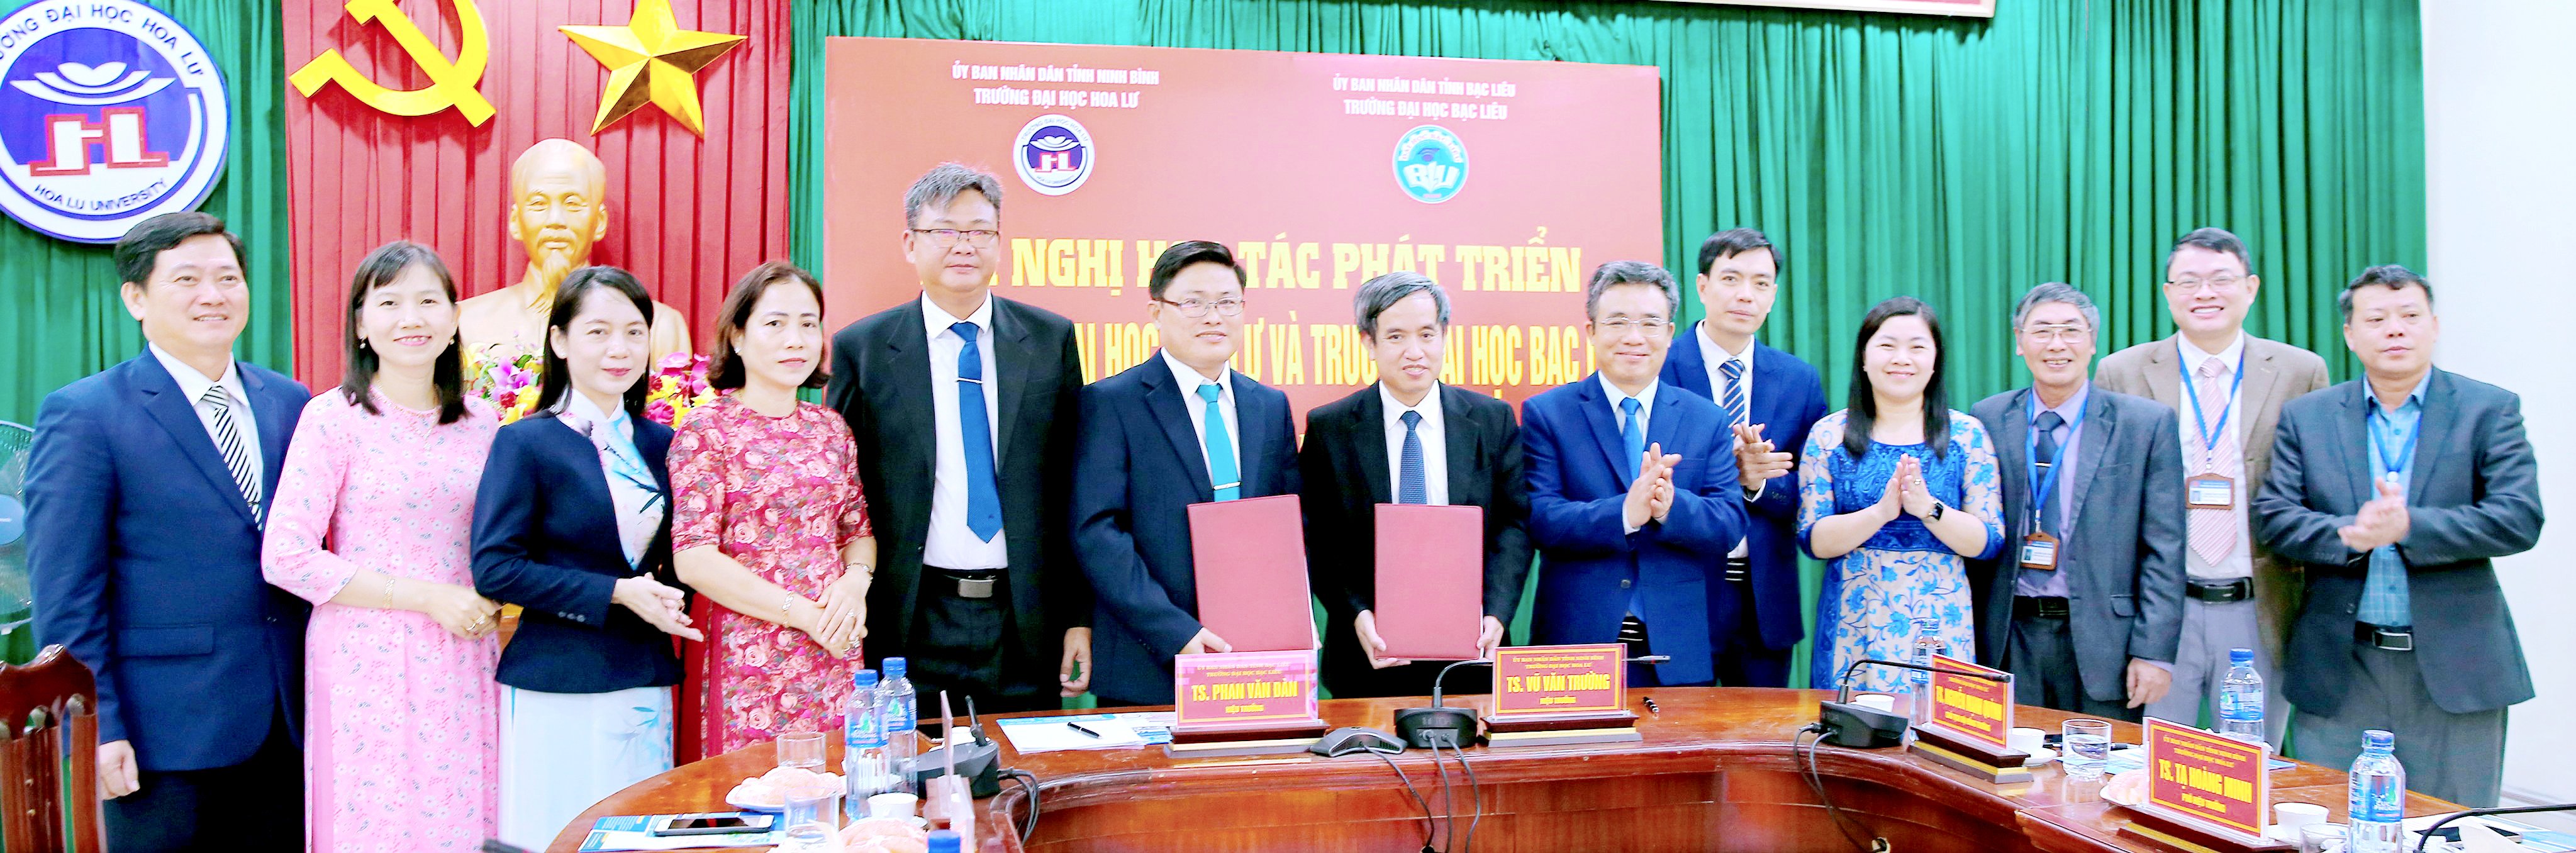 Hội nghị hợp tác phát triển giữa trường Đại học Bạc Liêu và trường Đại học Hoa Lư – Ninh Bình